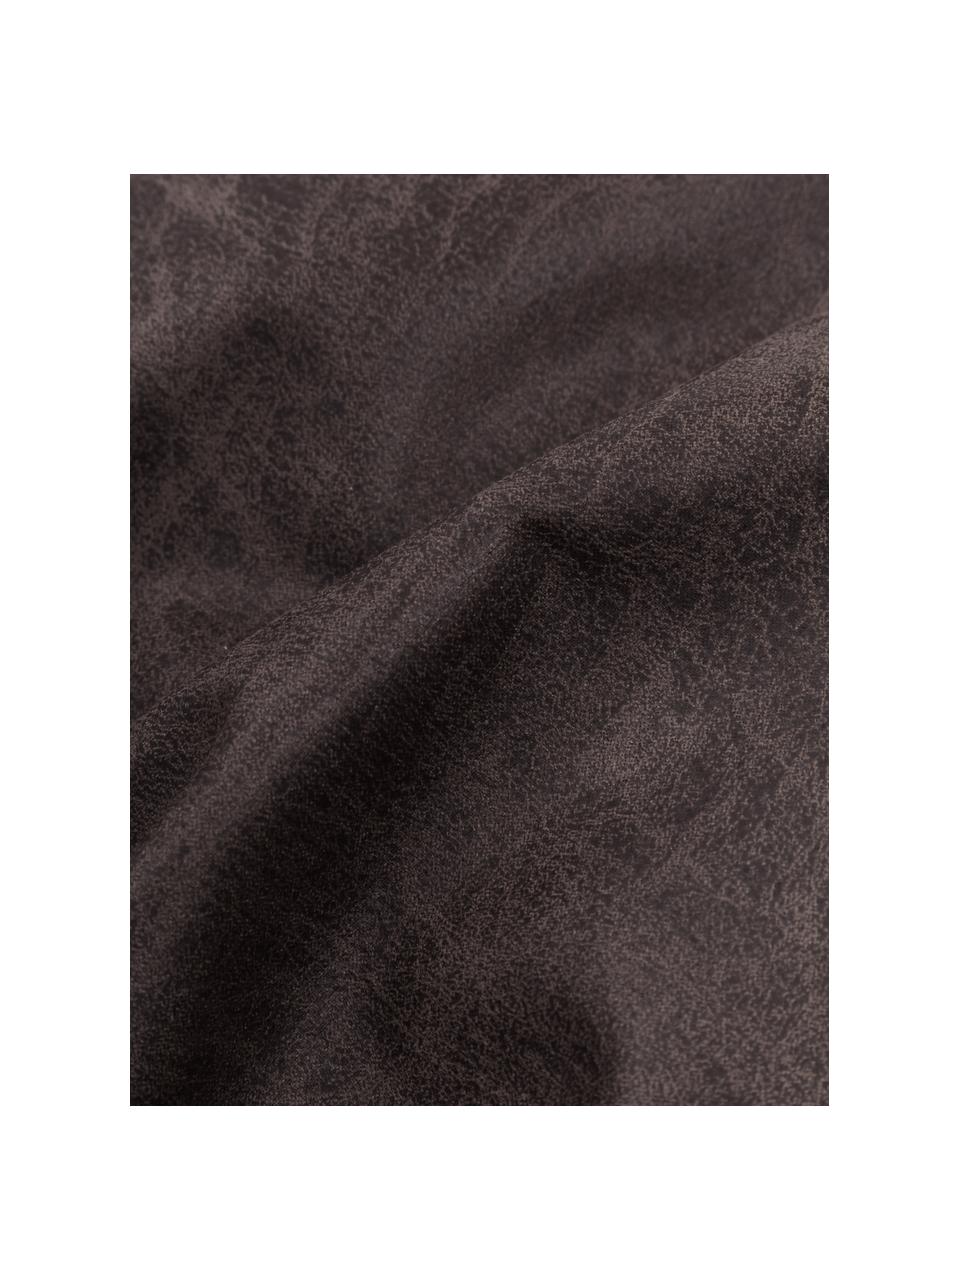 Cuscino arredo in pelle riciclata color marrone-grigio Lennon, Rivestimento: Pelle riciclata (70% pell, Marrone, grigio, Larg. 60 x Lung. 60 cm